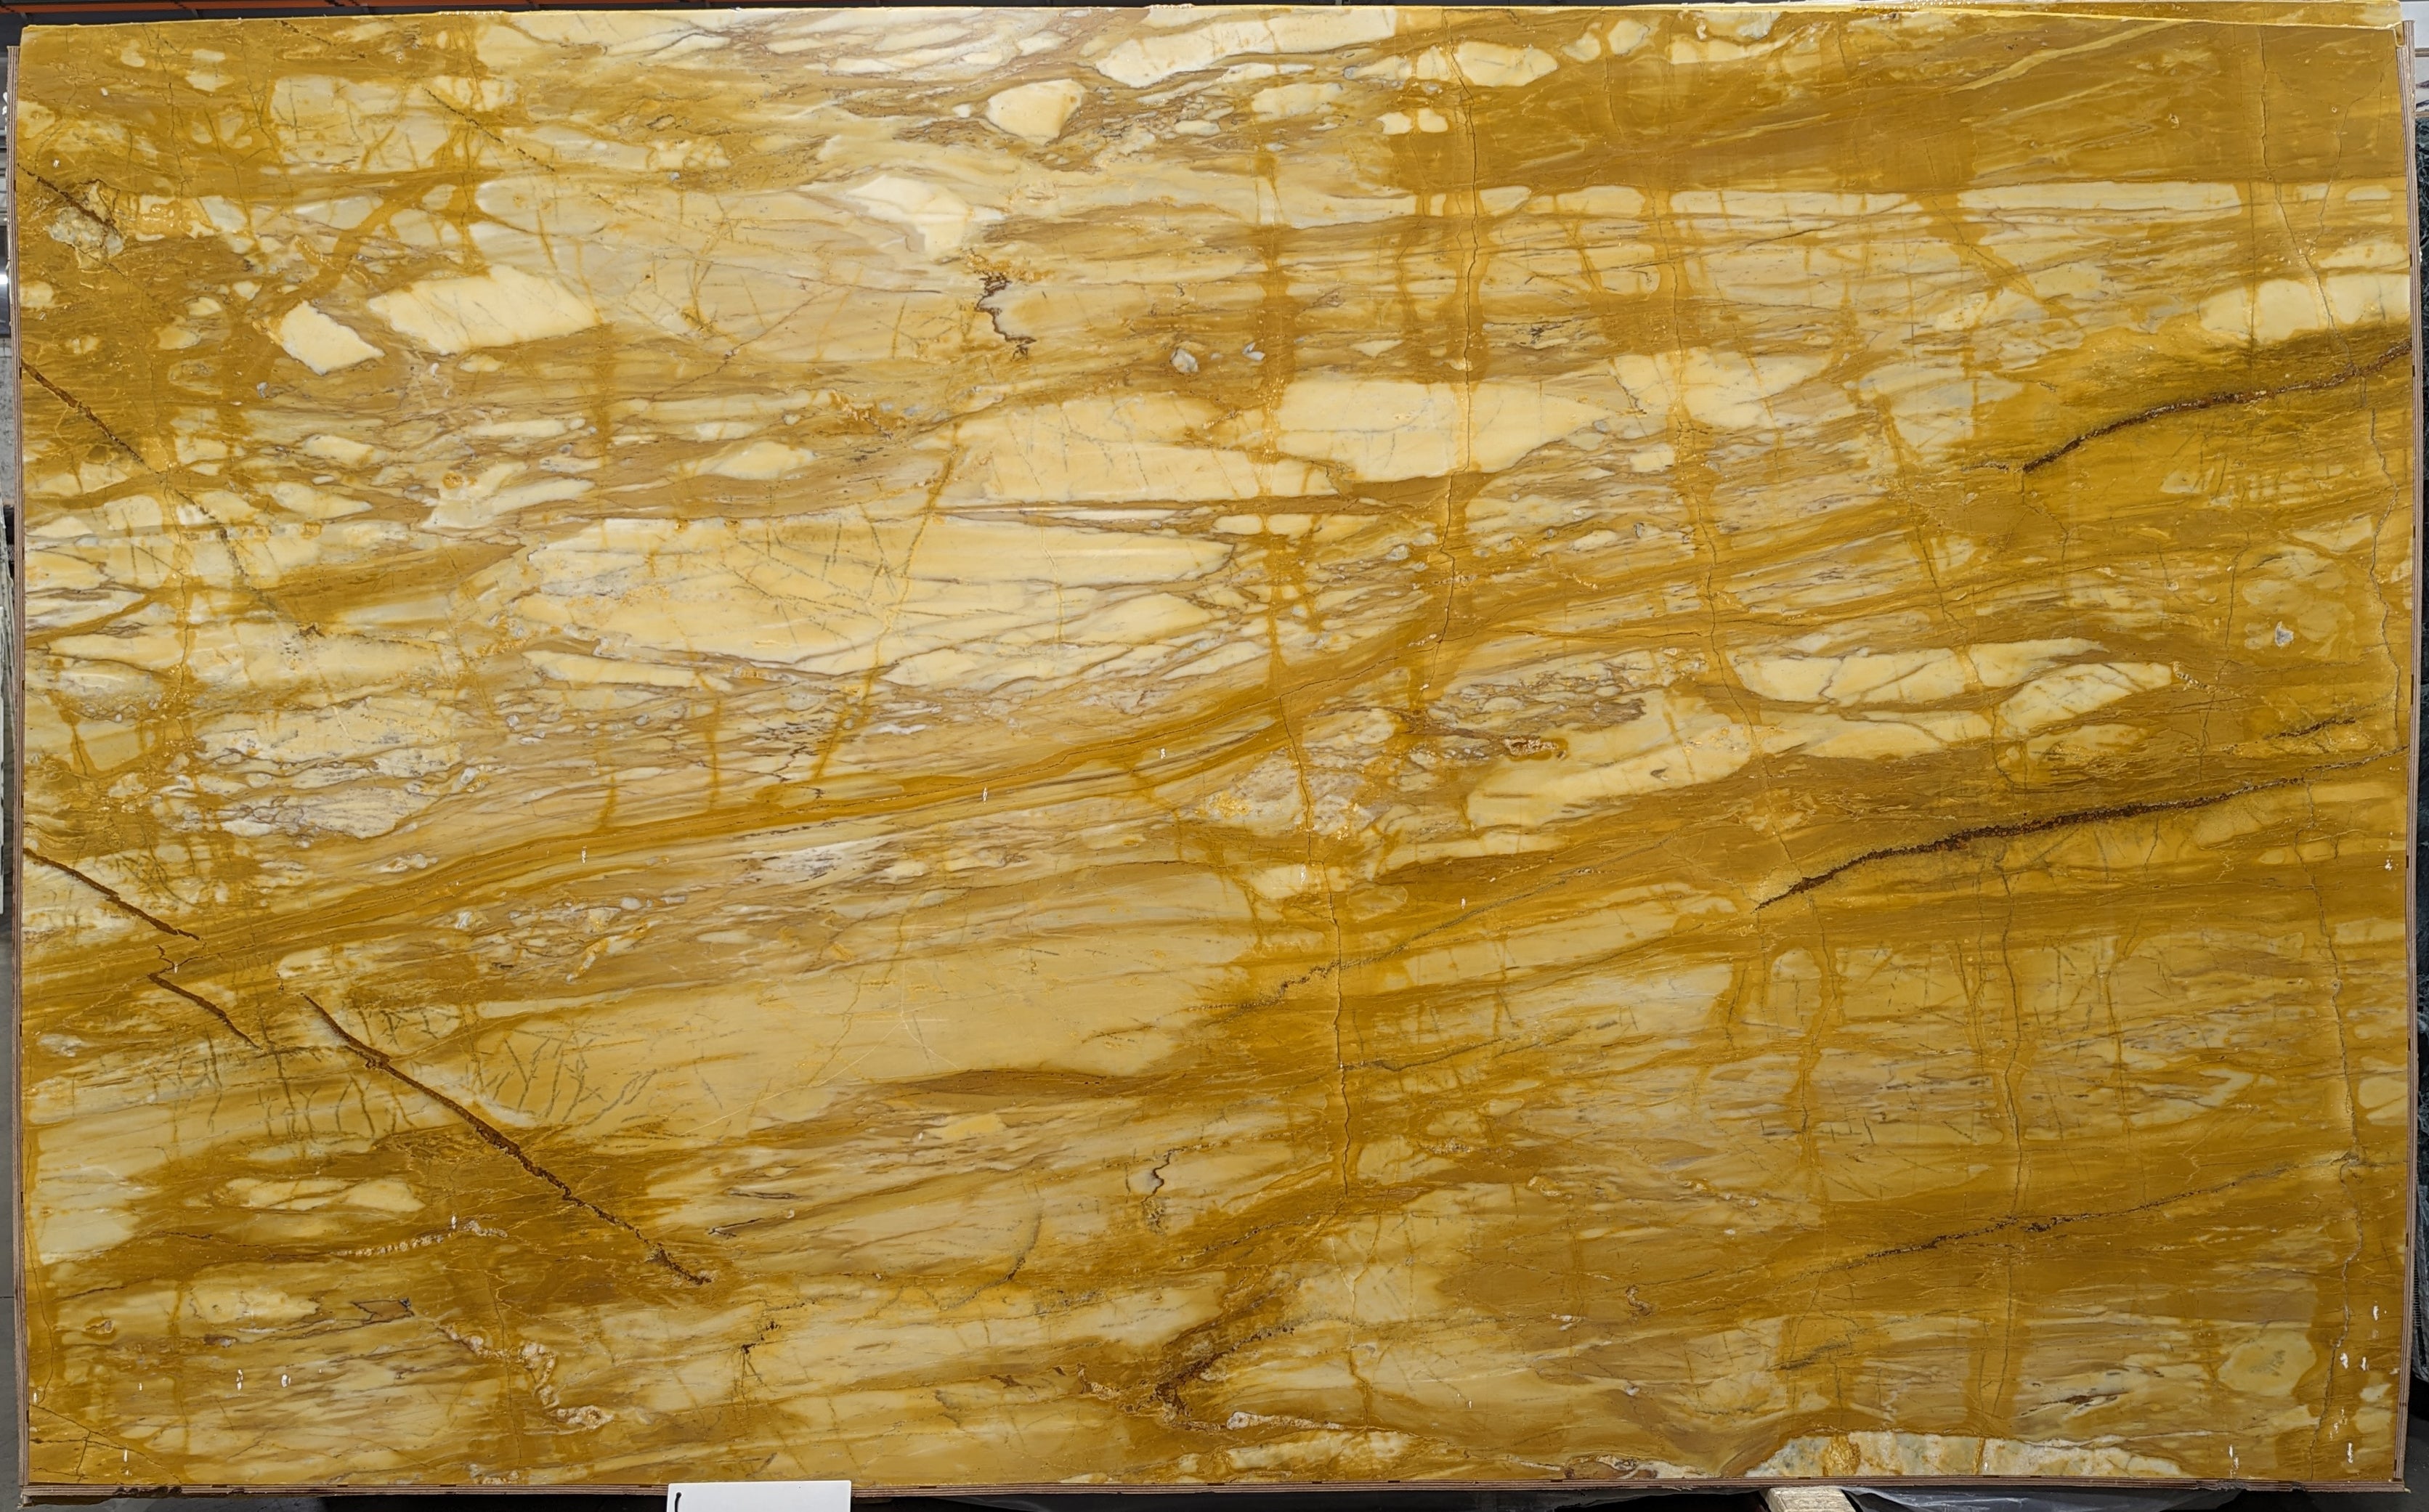  Giallo Siena Marble Slab 3/4  Polished Stone - 26568#35 -  73x120 